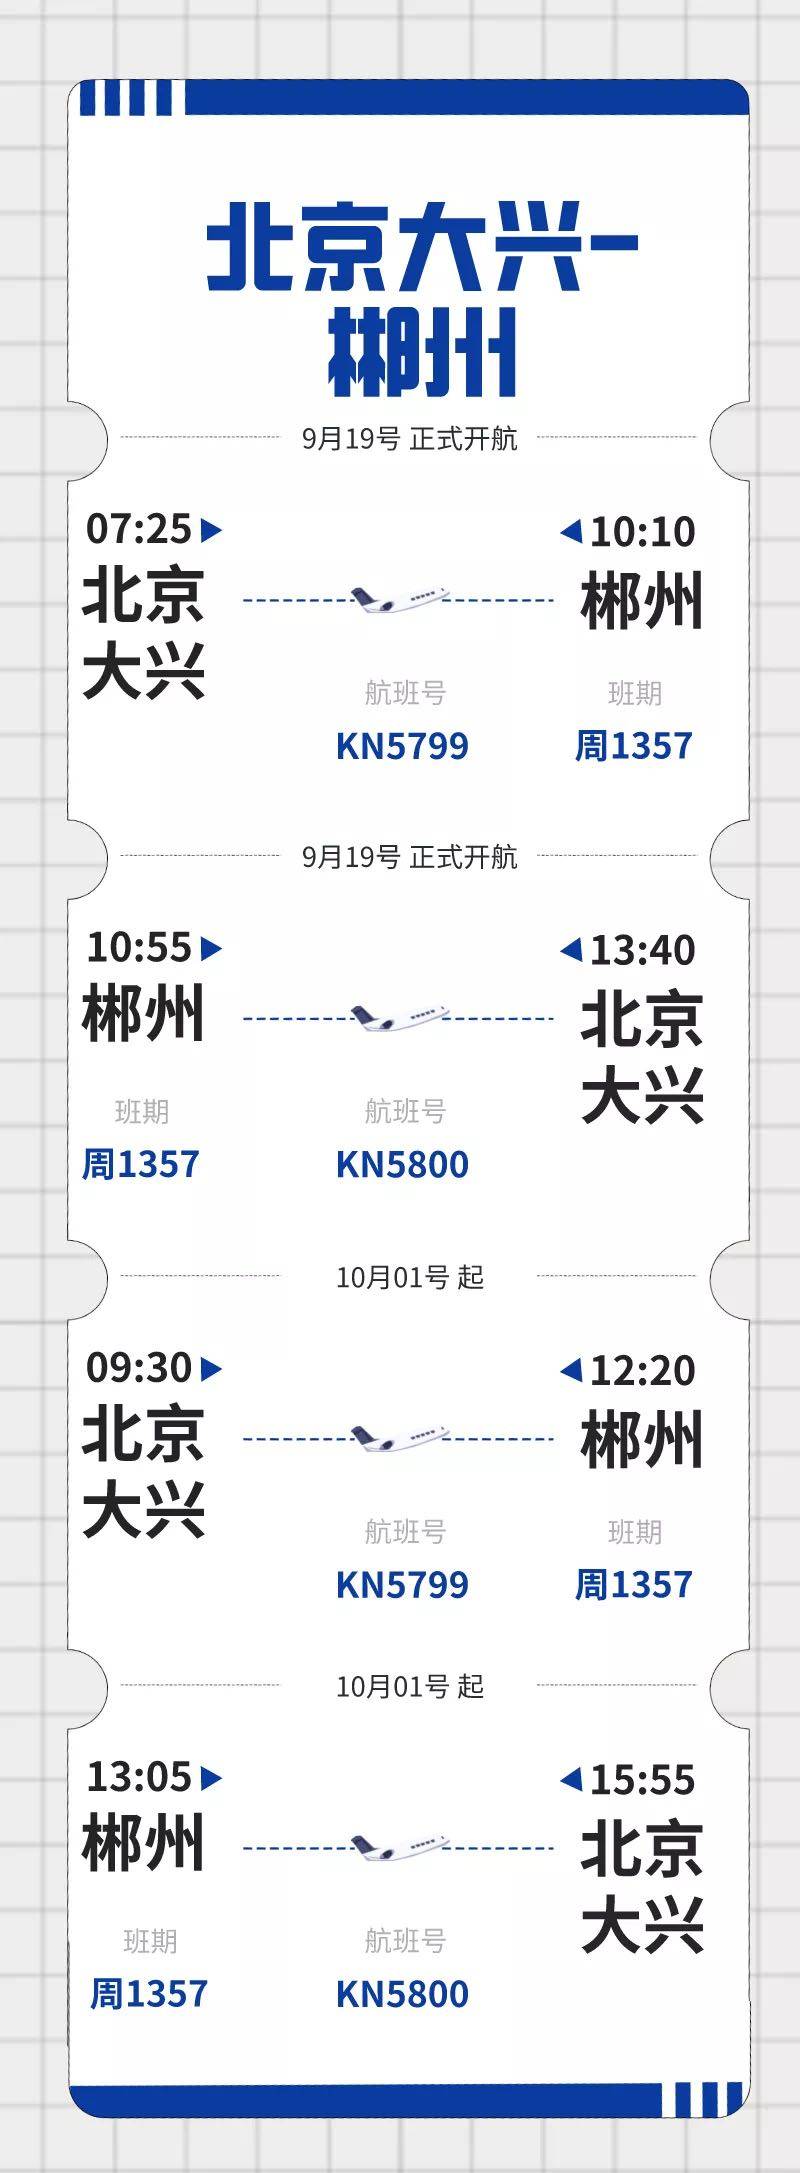 458元起中国联合航空北京大兴始发又开新航线